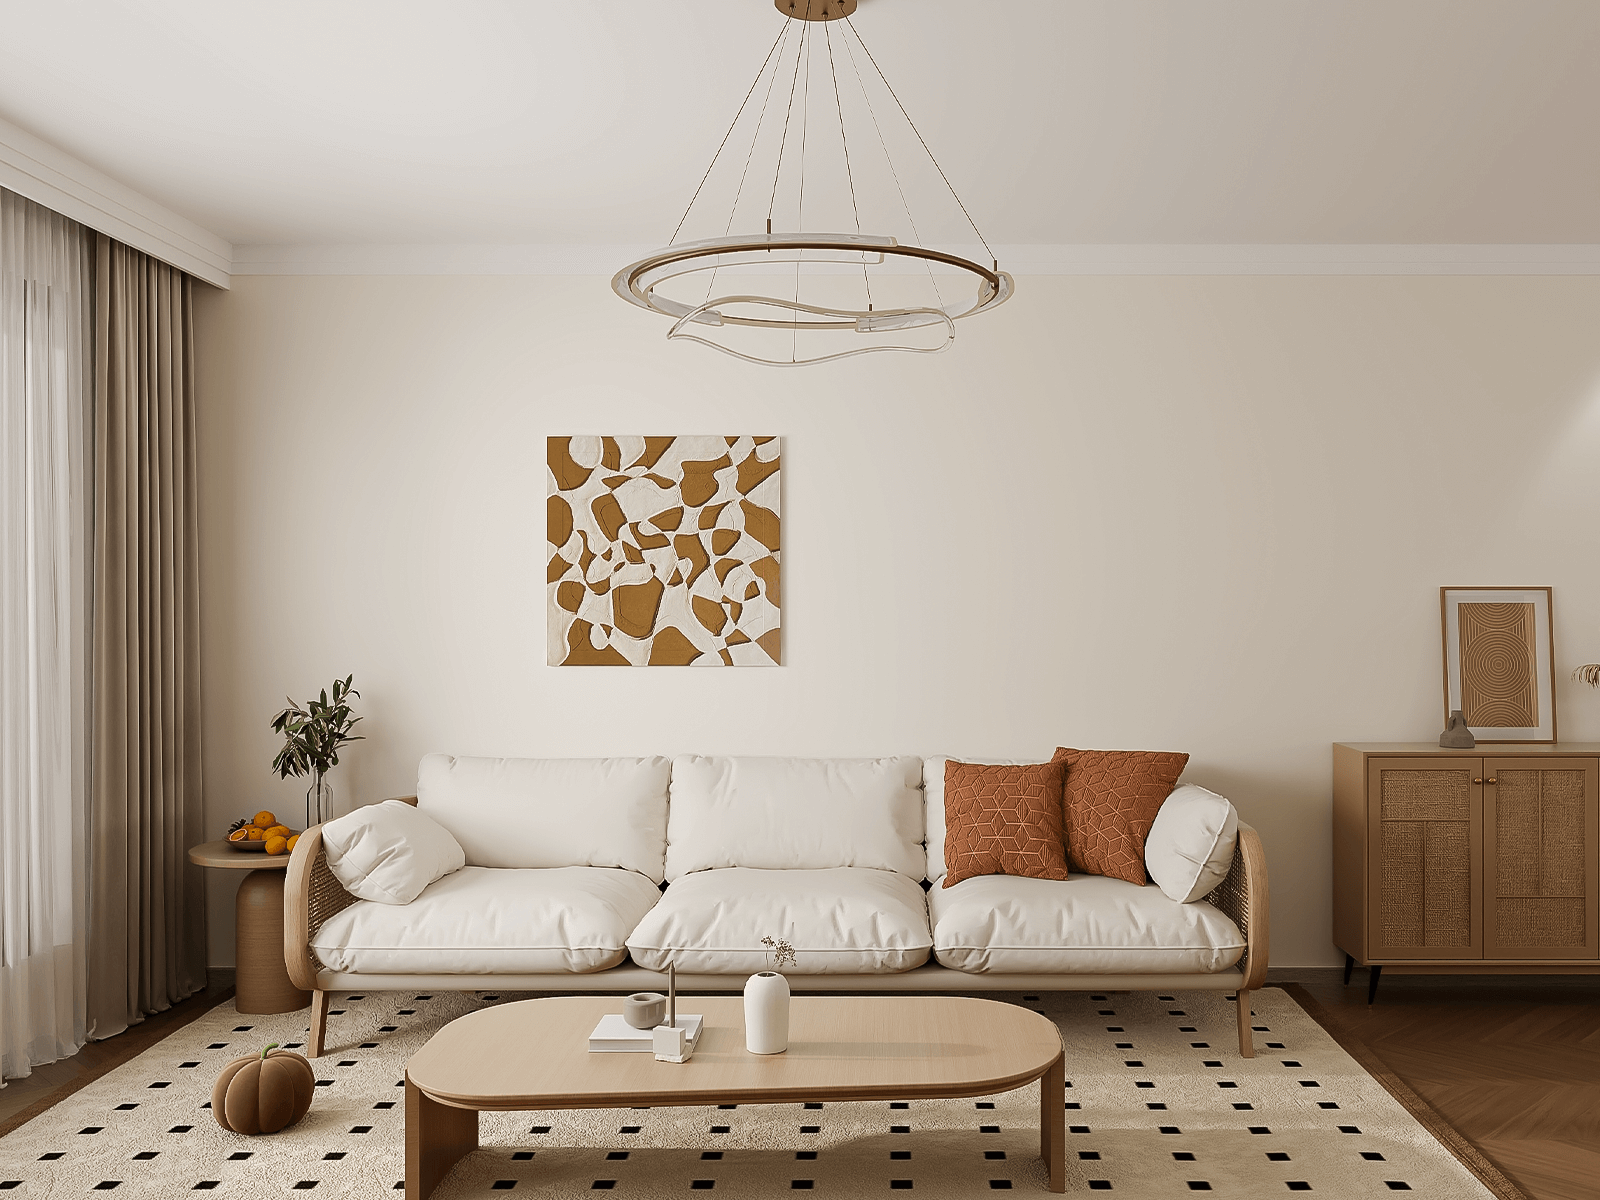 原木色和浅棕色是这户业主家的主色调。家具是木质+藤编。白色沙发和木色茶几在米色地垫的映衬下更加淡雅。挂画无论挂墙还是竖放都选择了浅棕色，和木色的地板搭配很和谐。